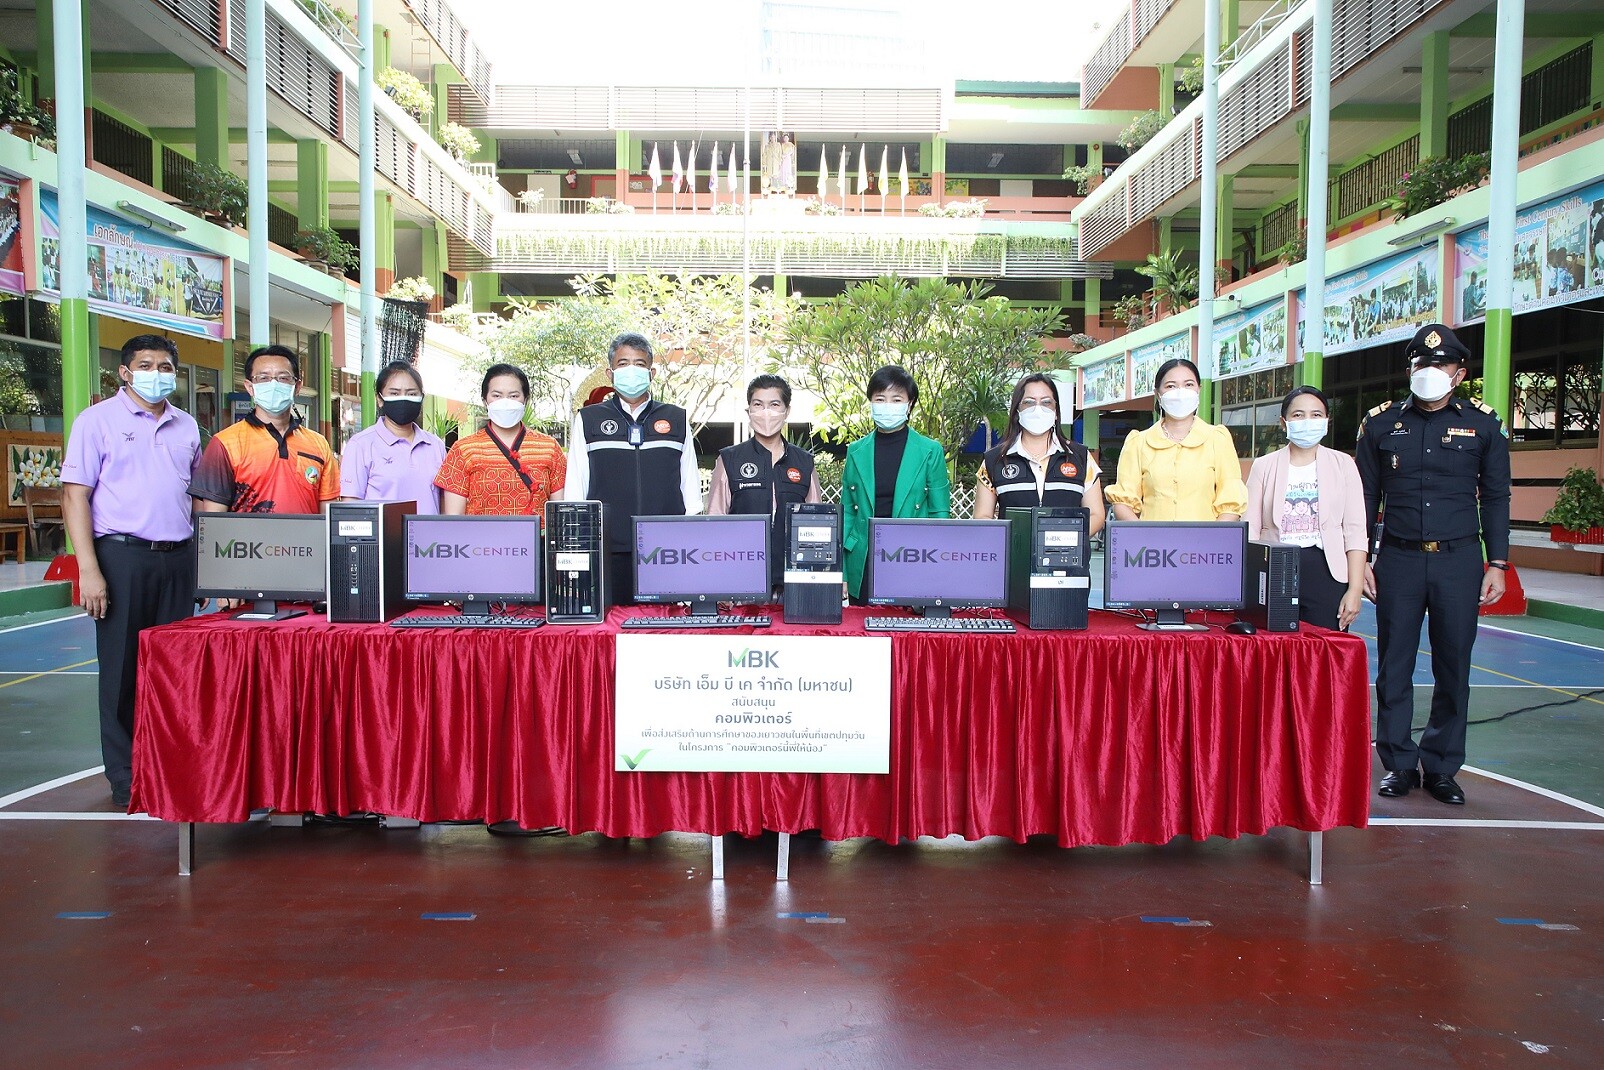 เอ็ม บี เค ส่งมอบชุดคอมพิวเตอร์ให้ 5 โรงเรียนในเขตปทุมวัน ส่งเสริมการเรียนรู้ของเด็กไทย ในกิจกรรมคอมพิวเตอร์นี้พี่ให้น้อง ภายใต้โครงการ MBK SPIRIT อาสาสร้างสุขสู่ชุมชน